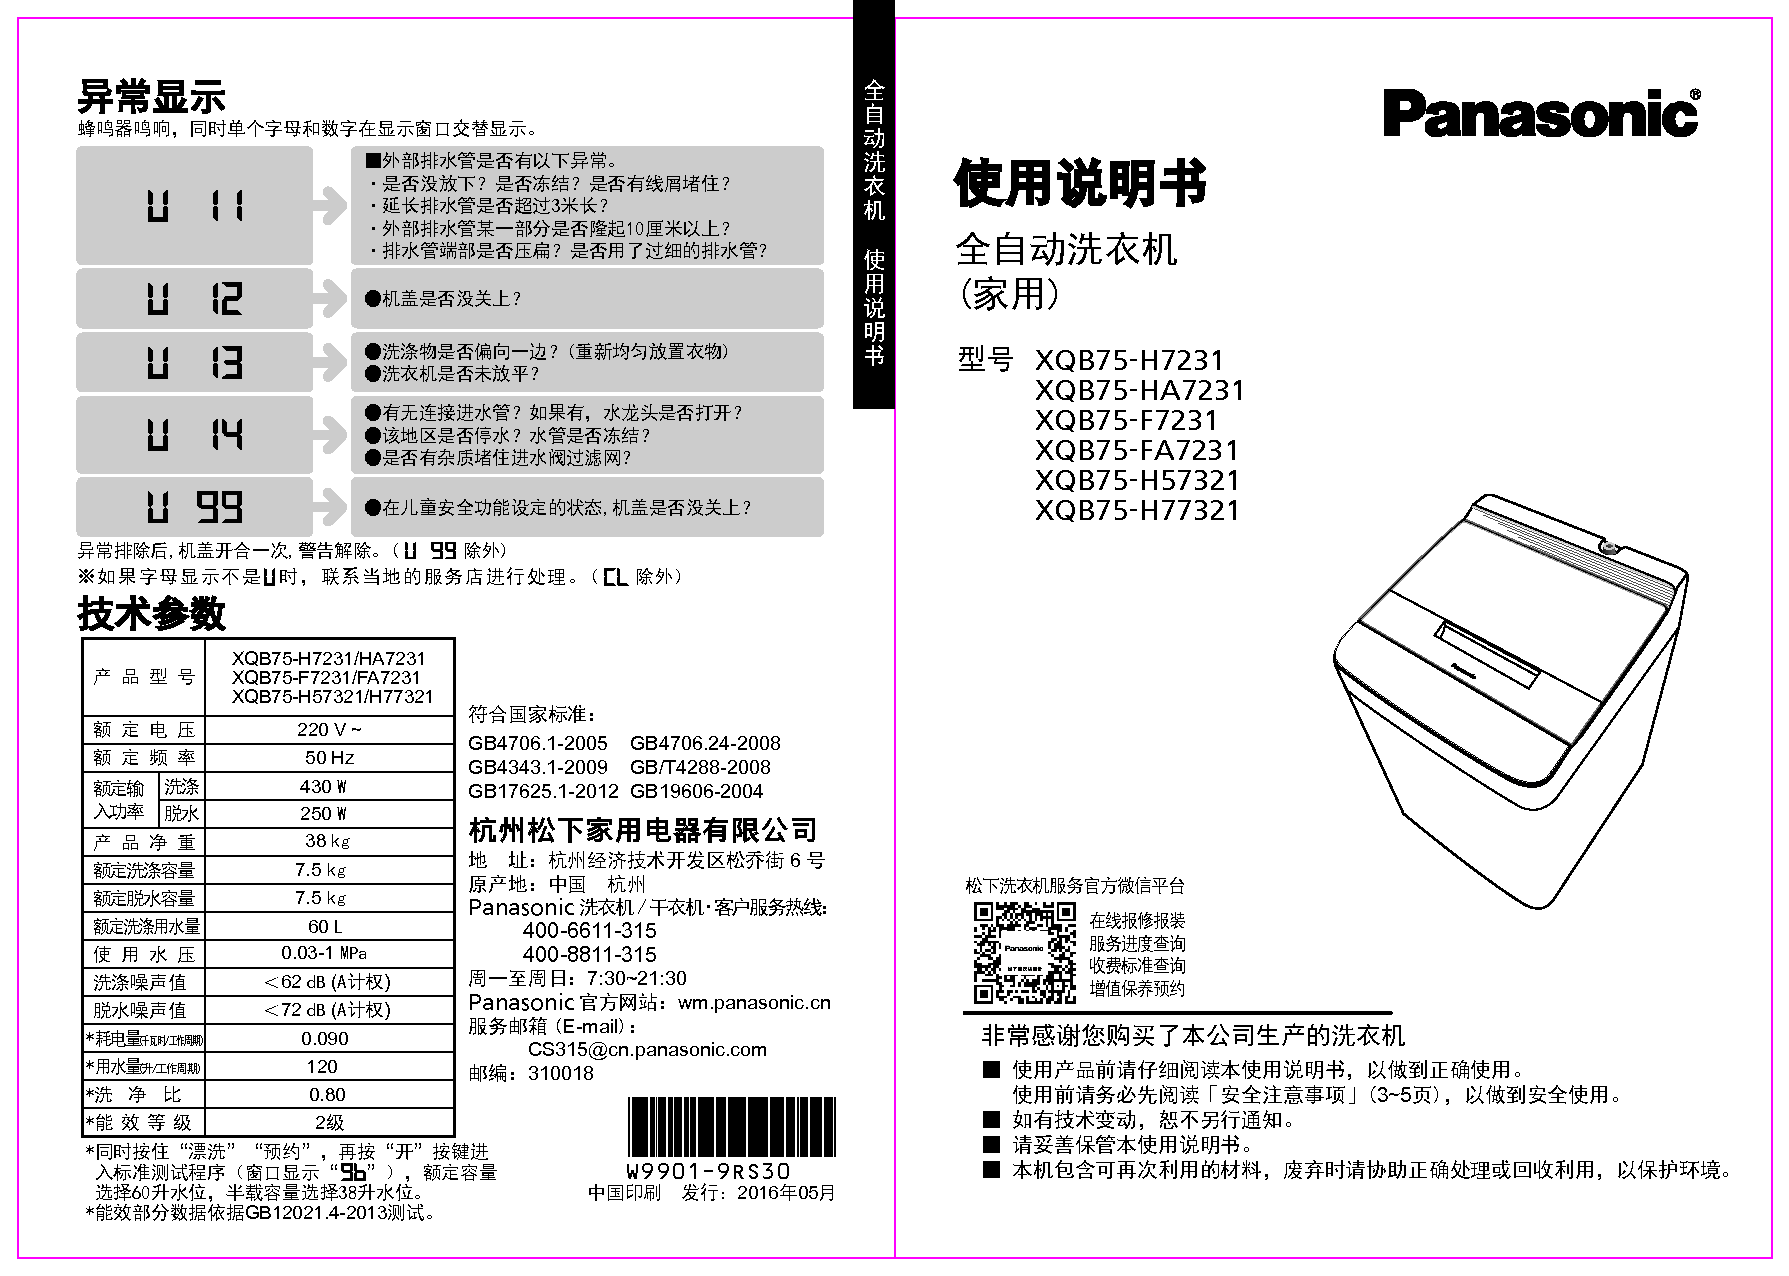 松下 Panasonic XQB75-F7231 使用说明书 封面